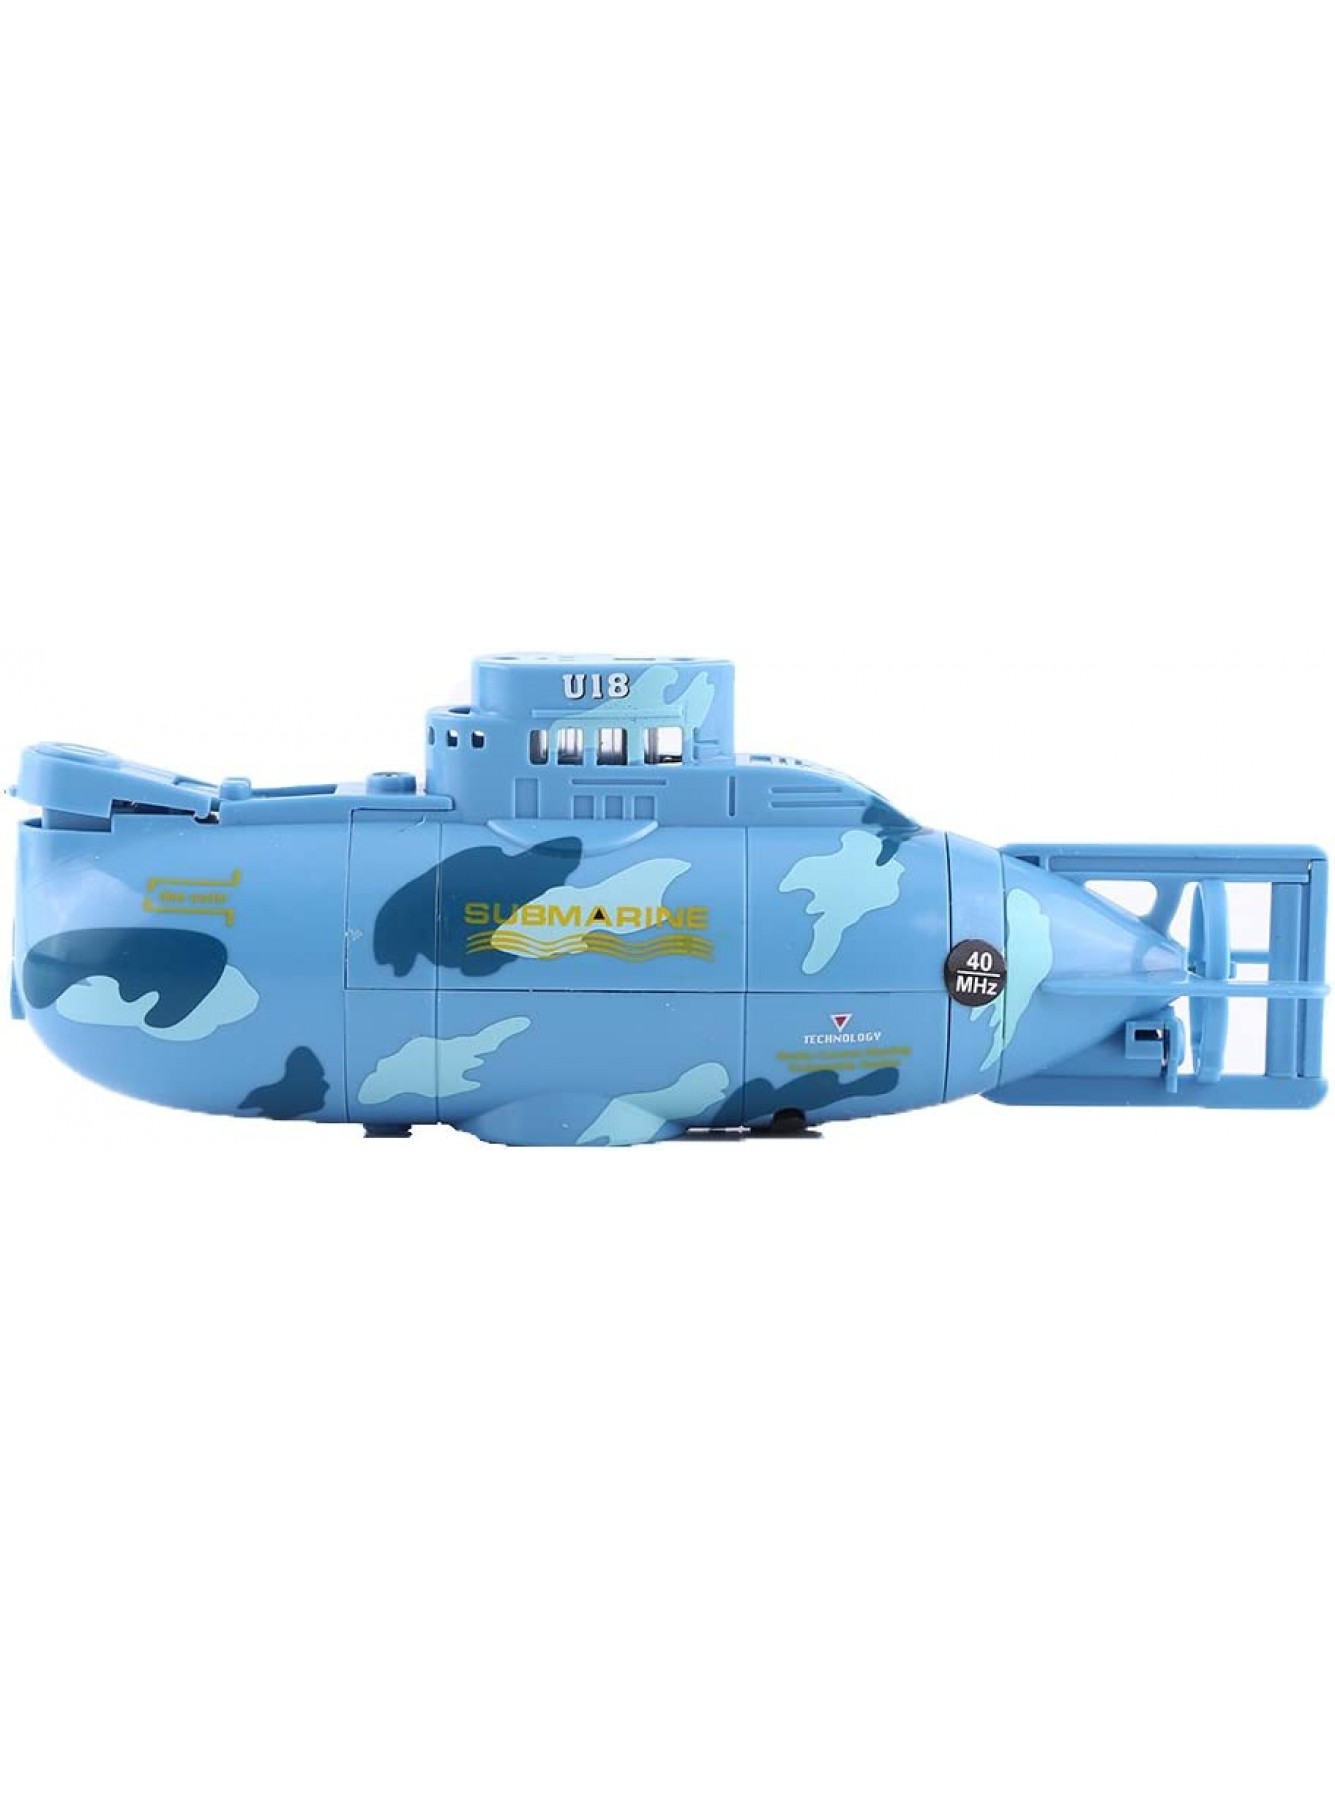 Mini Submarine Ferngesteuert U-Boot Kinder Spielzeug mit USB Kabel und FernbedienungBlau - B074JY55HY